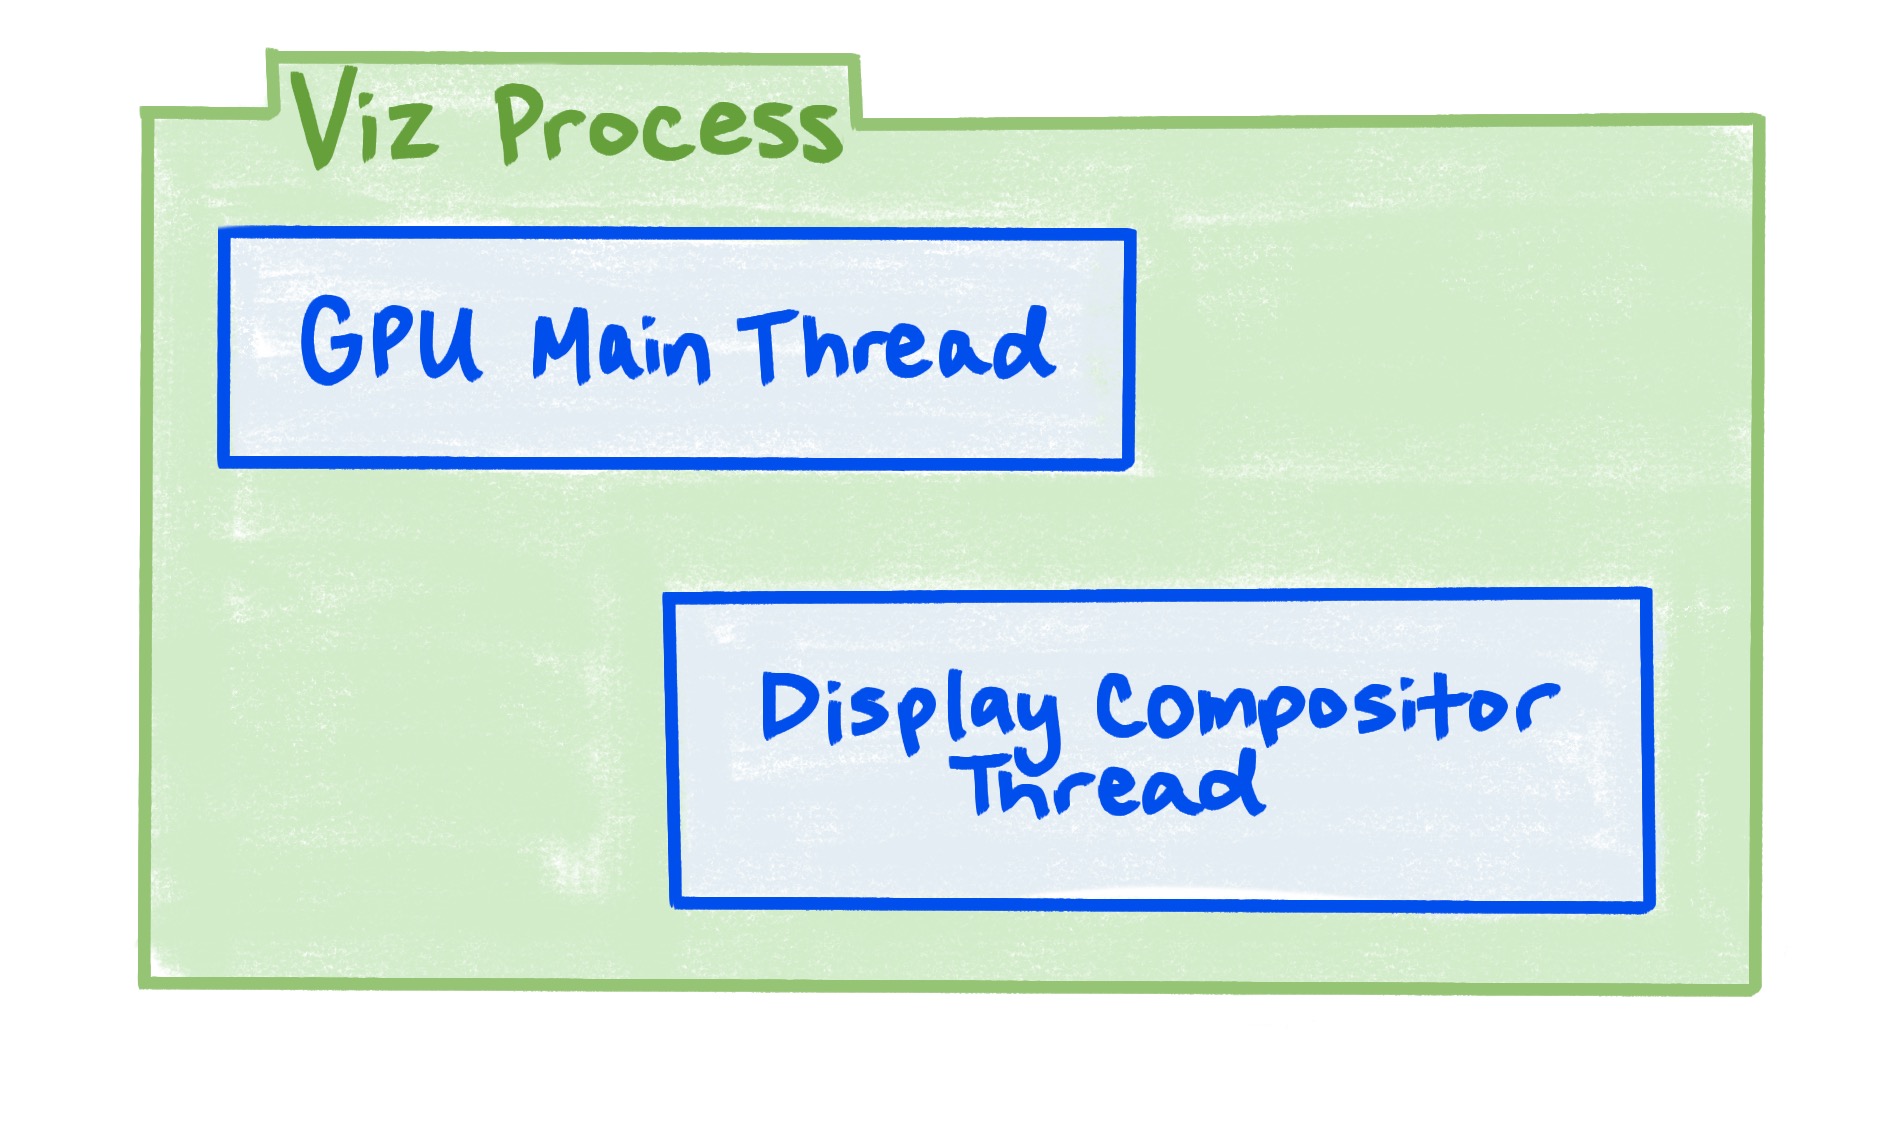 Диаграмма, показывающая, что процесс Viz включает в себя основной поток графического процессора и поток компоновщика дисплея.